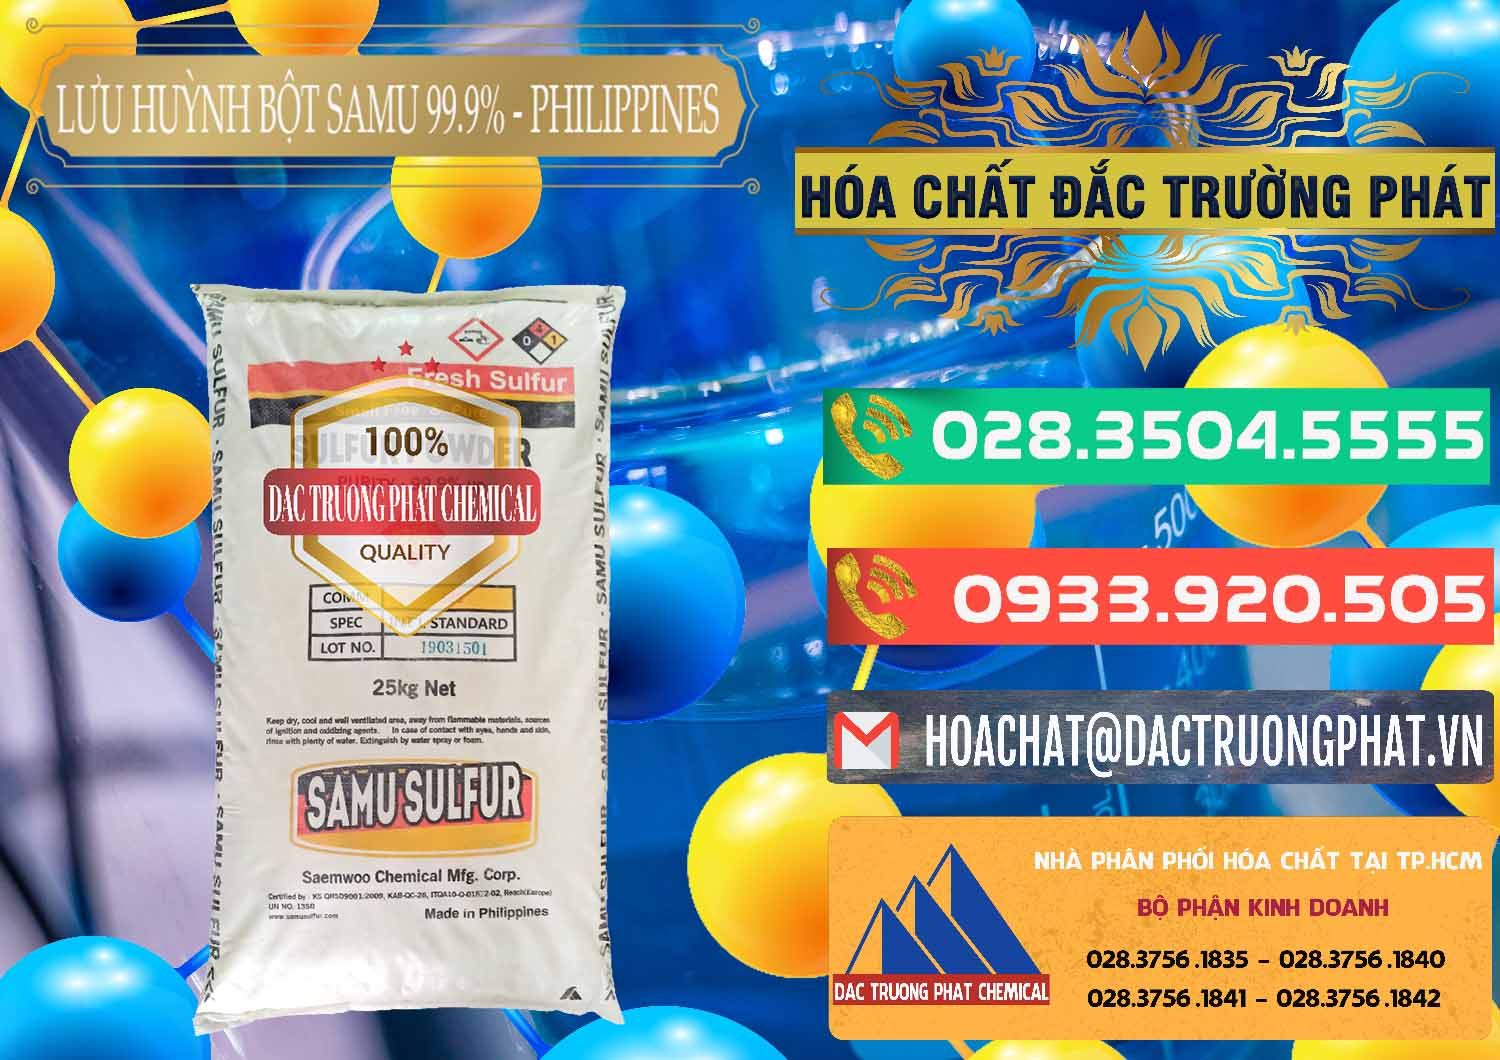 Cty chuyên nhập khẩu và bán Lưu huỳnh Bột - Sulfur Powder Samu Philippines - 0201 - Nhà cung cấp và phân phối hóa chất tại TP.HCM - congtyhoachat.com.vn